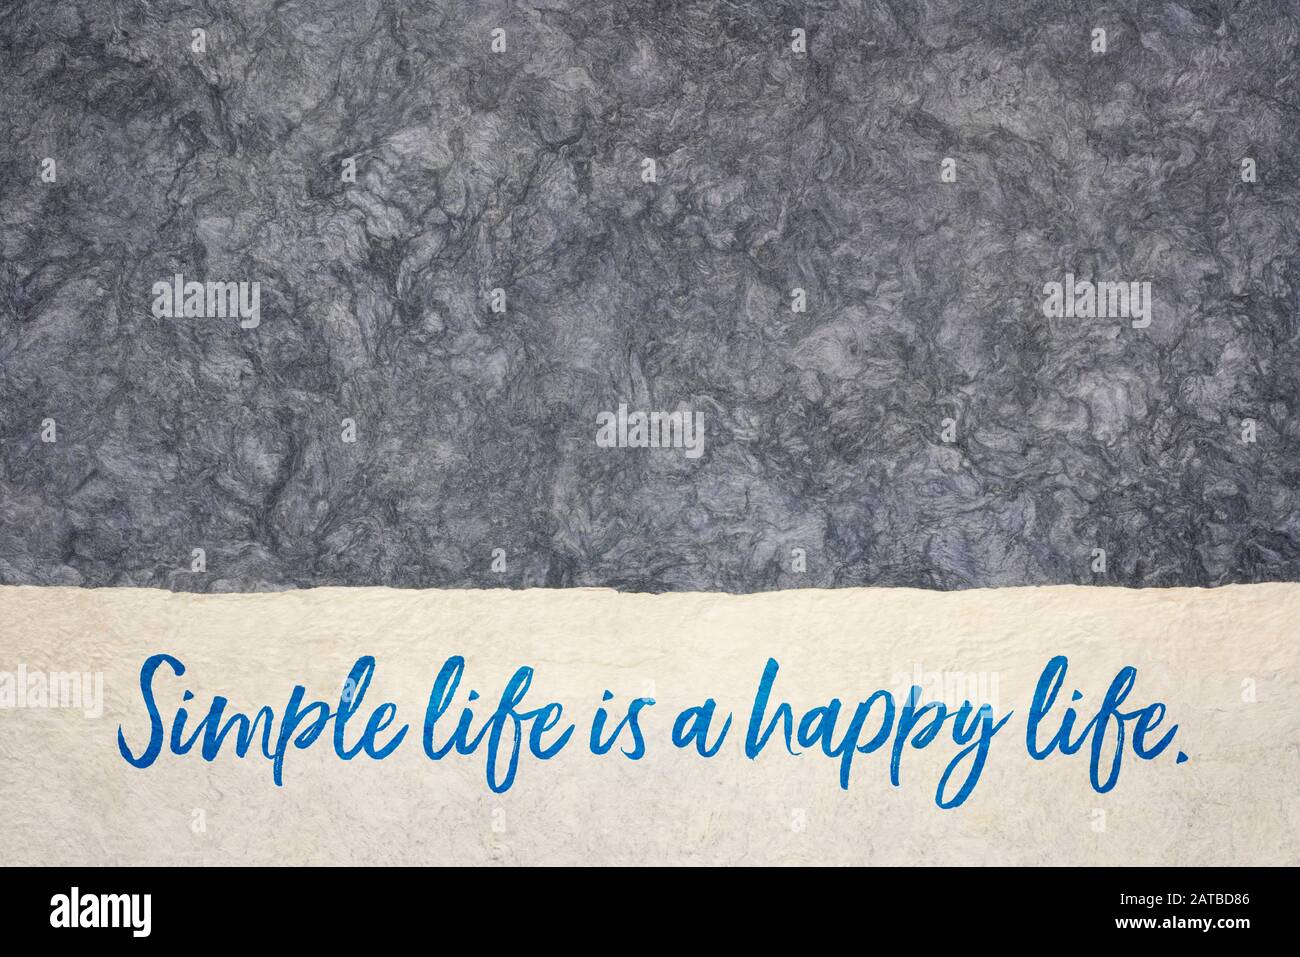 Das einfache Leben ist eine inspirierende Handschrift des glücklichen Lebens auf einem strukturierten, amaten Rindenpapier, Lifestyle- und Denkkonzept Stockfoto